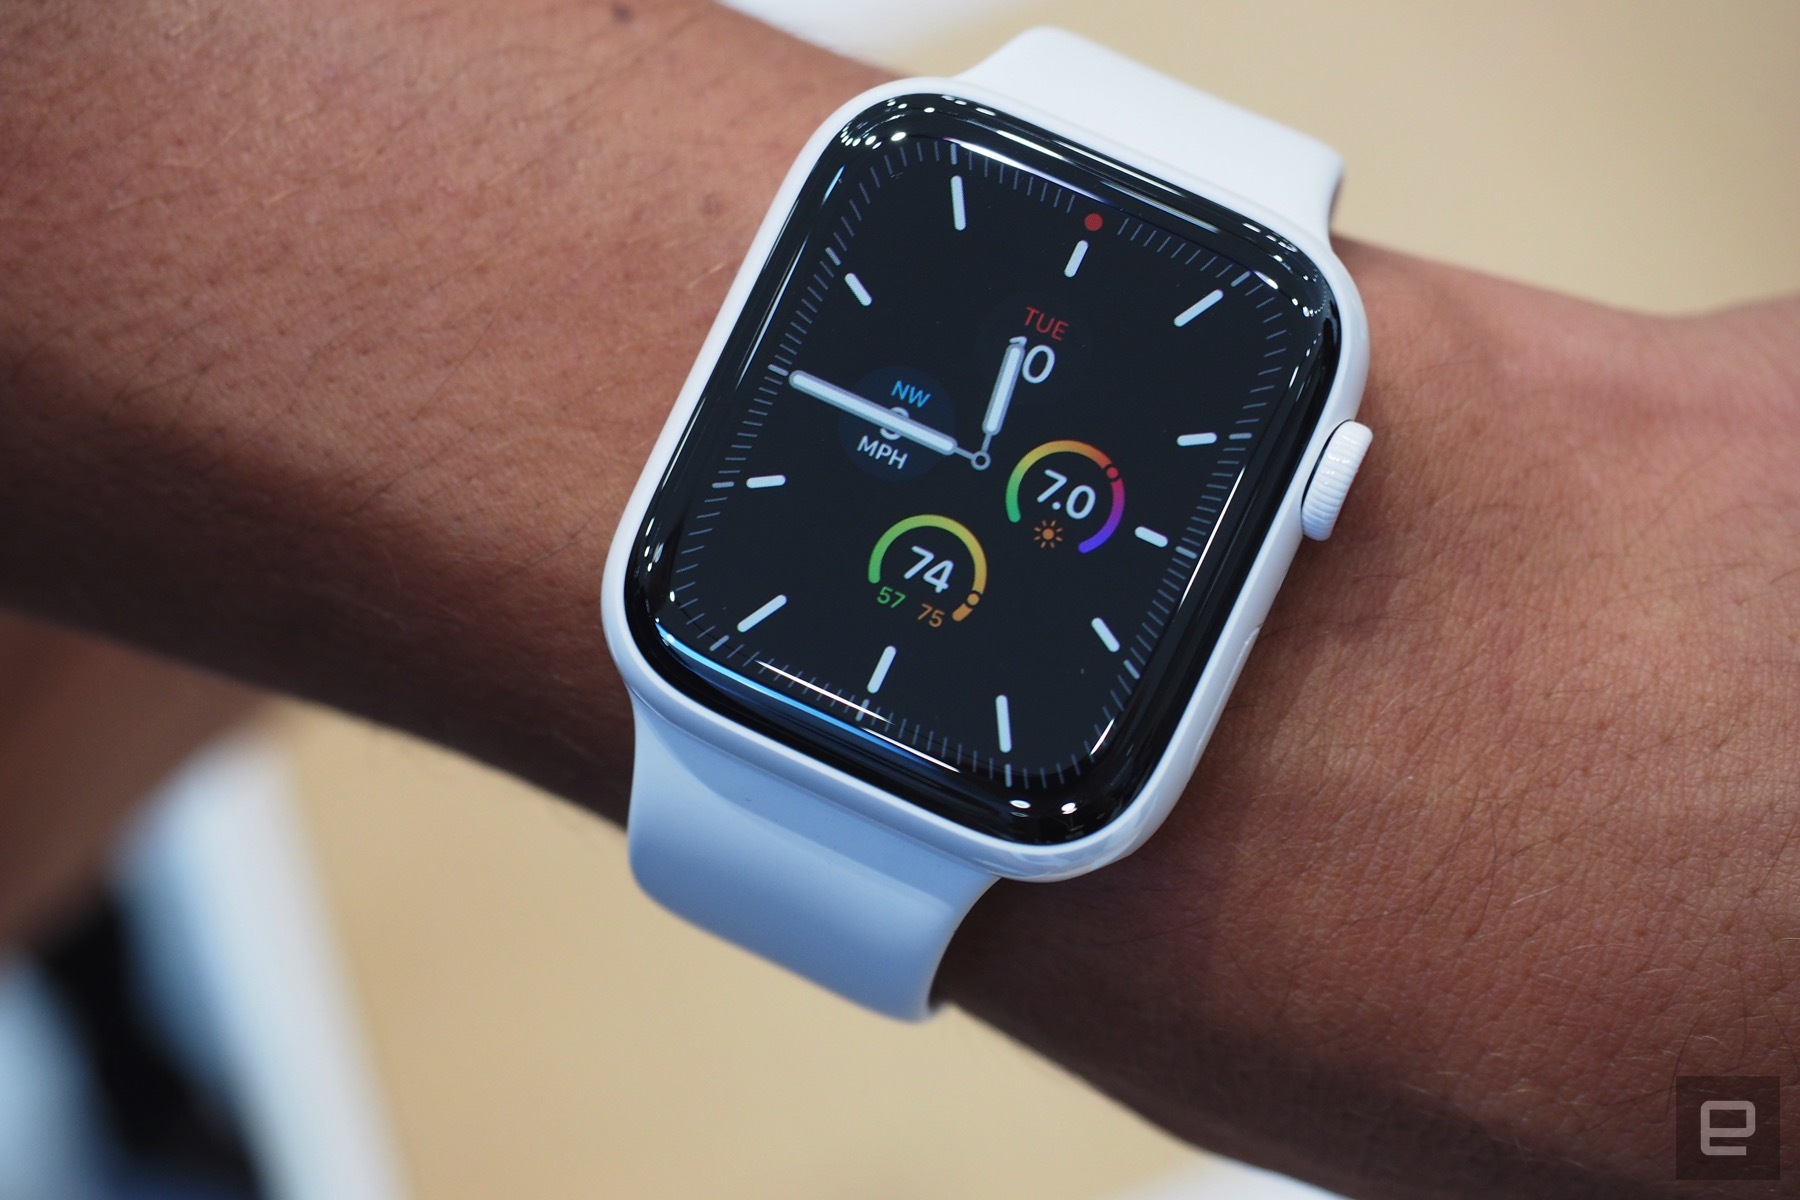 Cận cảnh Apple Watch Series 5: Thiết kế tương tự
Apple Watch Series 4, thay đổi vật liệu chế tác và bổ sung
Always on Display